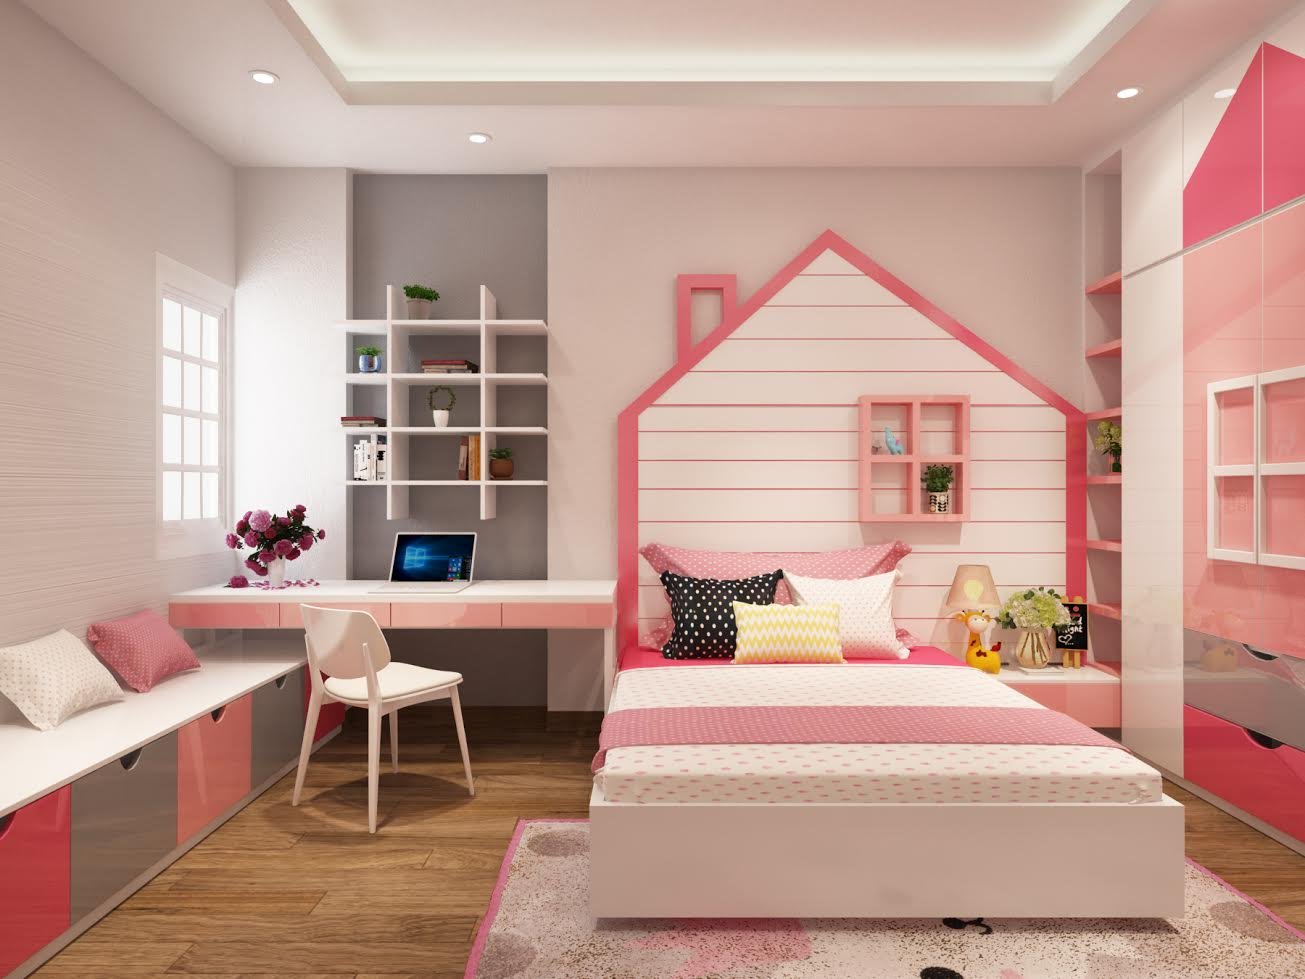 Thiết kế phòng ngủ cho bé gái với gam màu hồng nhẹ nhàng và tươi sáng